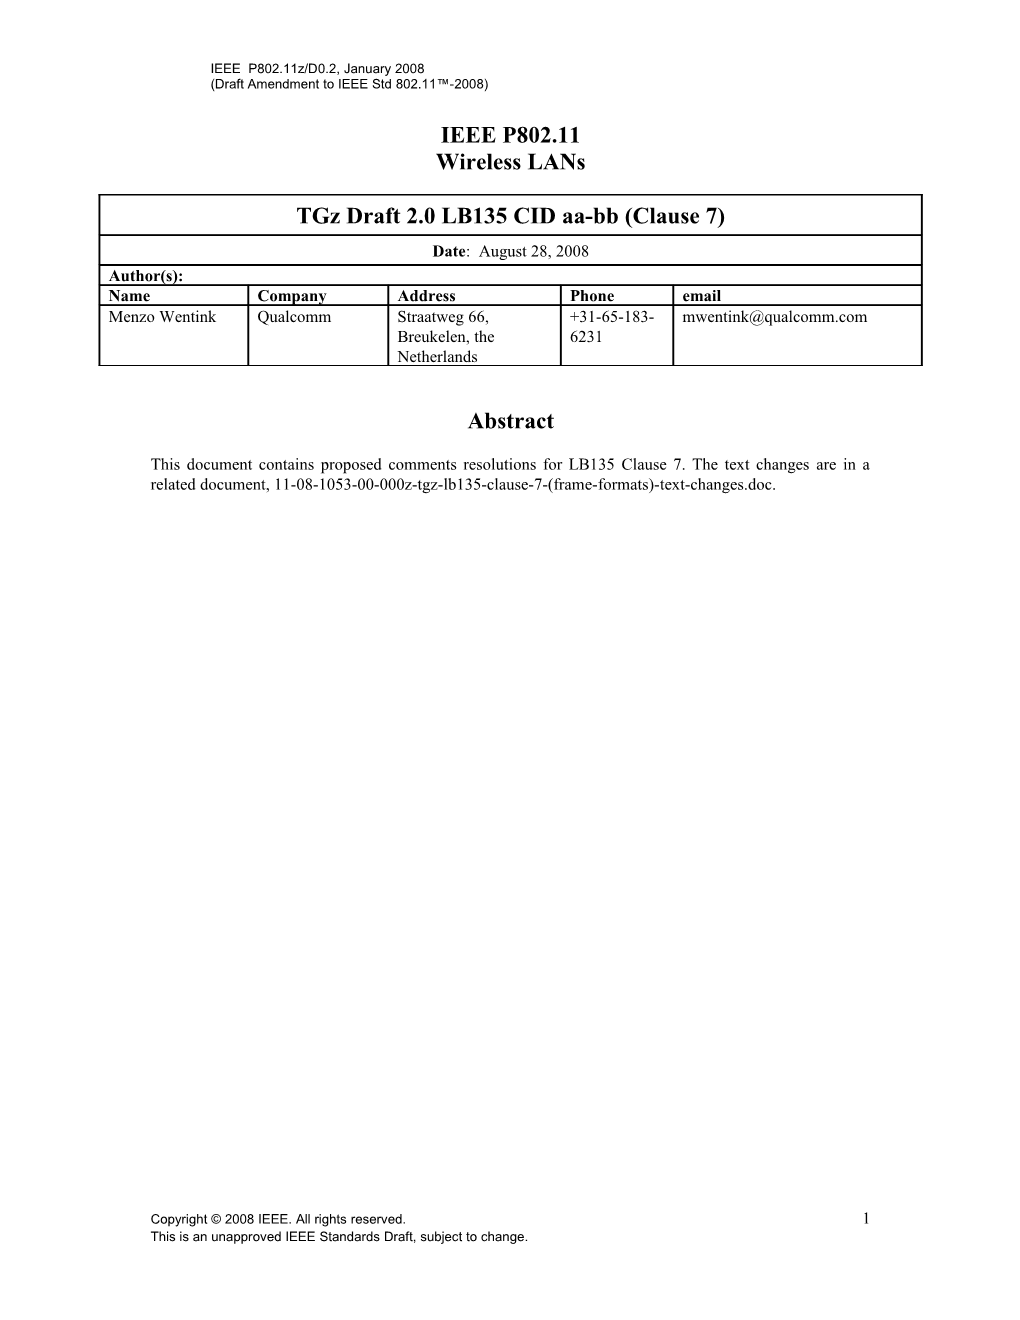 Draft Amendment to IEEE Std 802.11 -2008